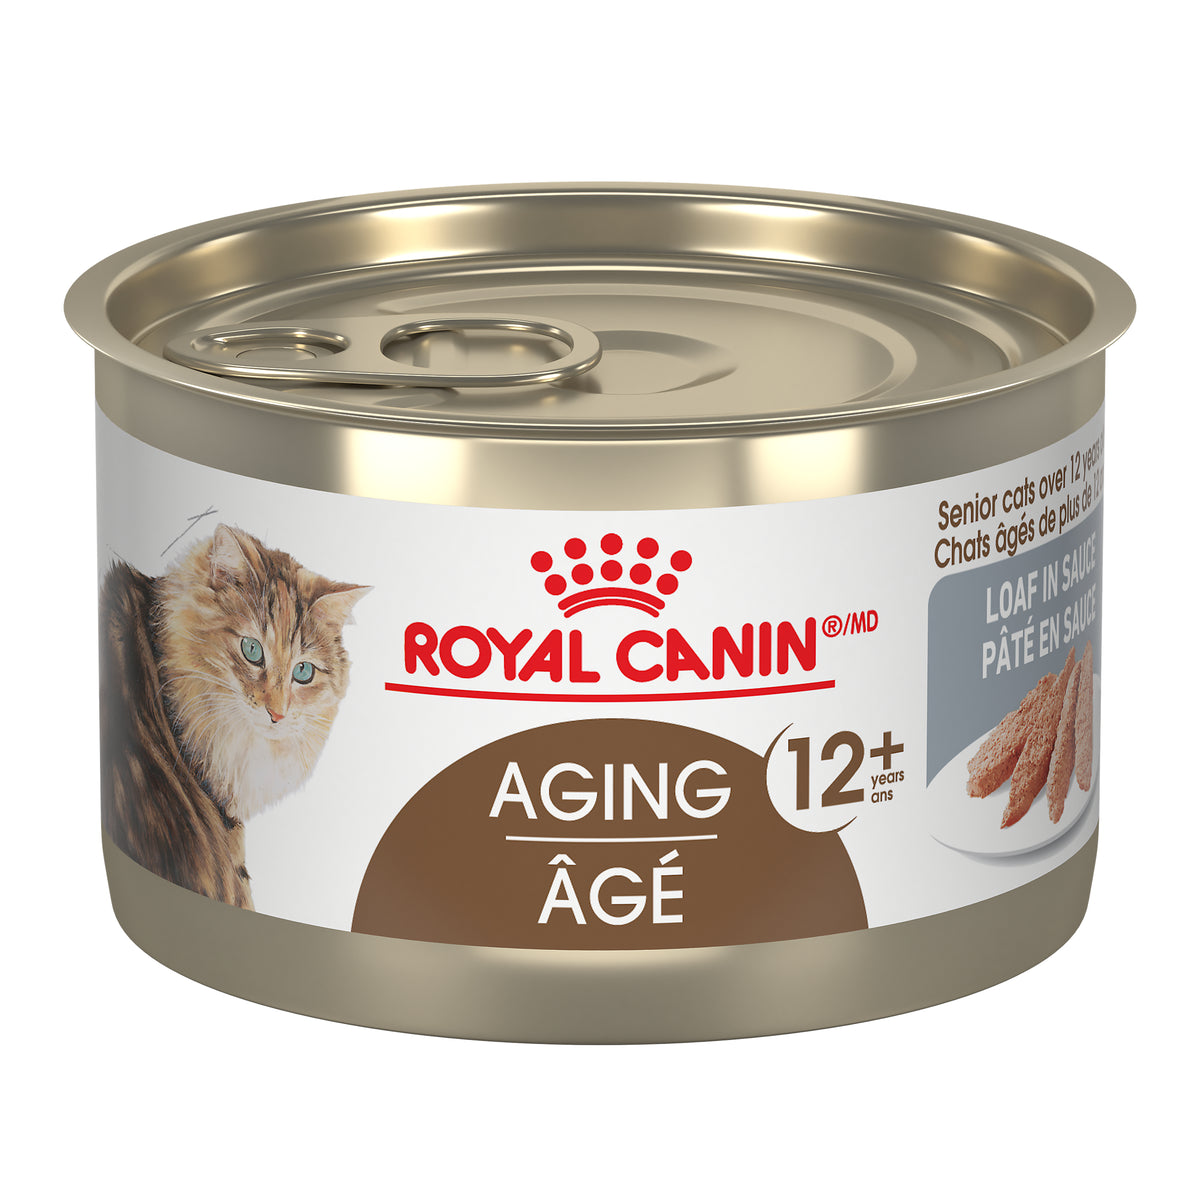 Royal Canin ÂGÉ 12+ PÂTÉ EN SAUCE – Nourriture en conserve pour chats (145g)